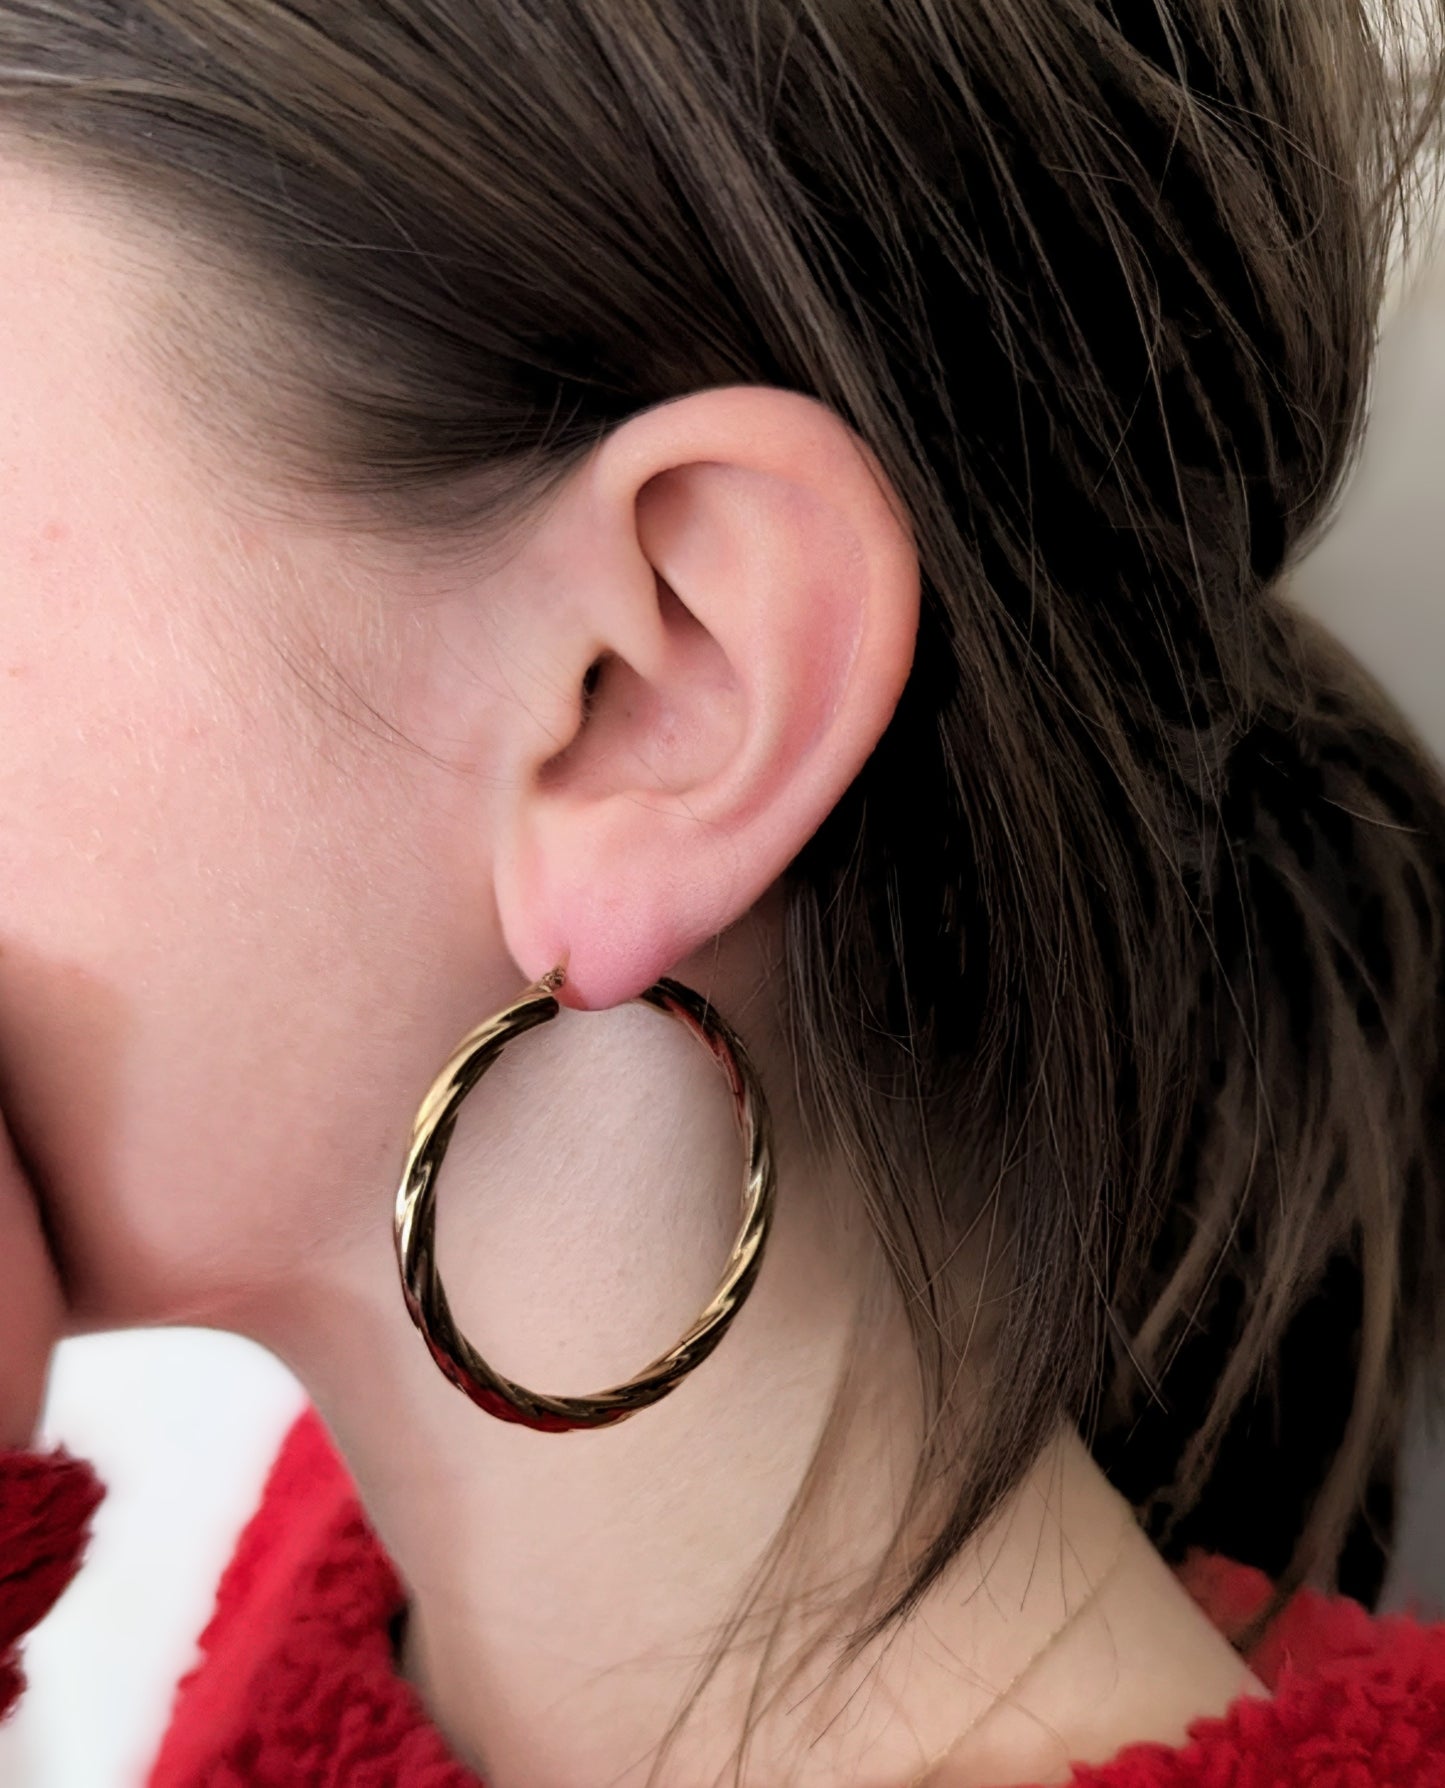 Vintage 9ct gold twist hoop earrings, large size hoops